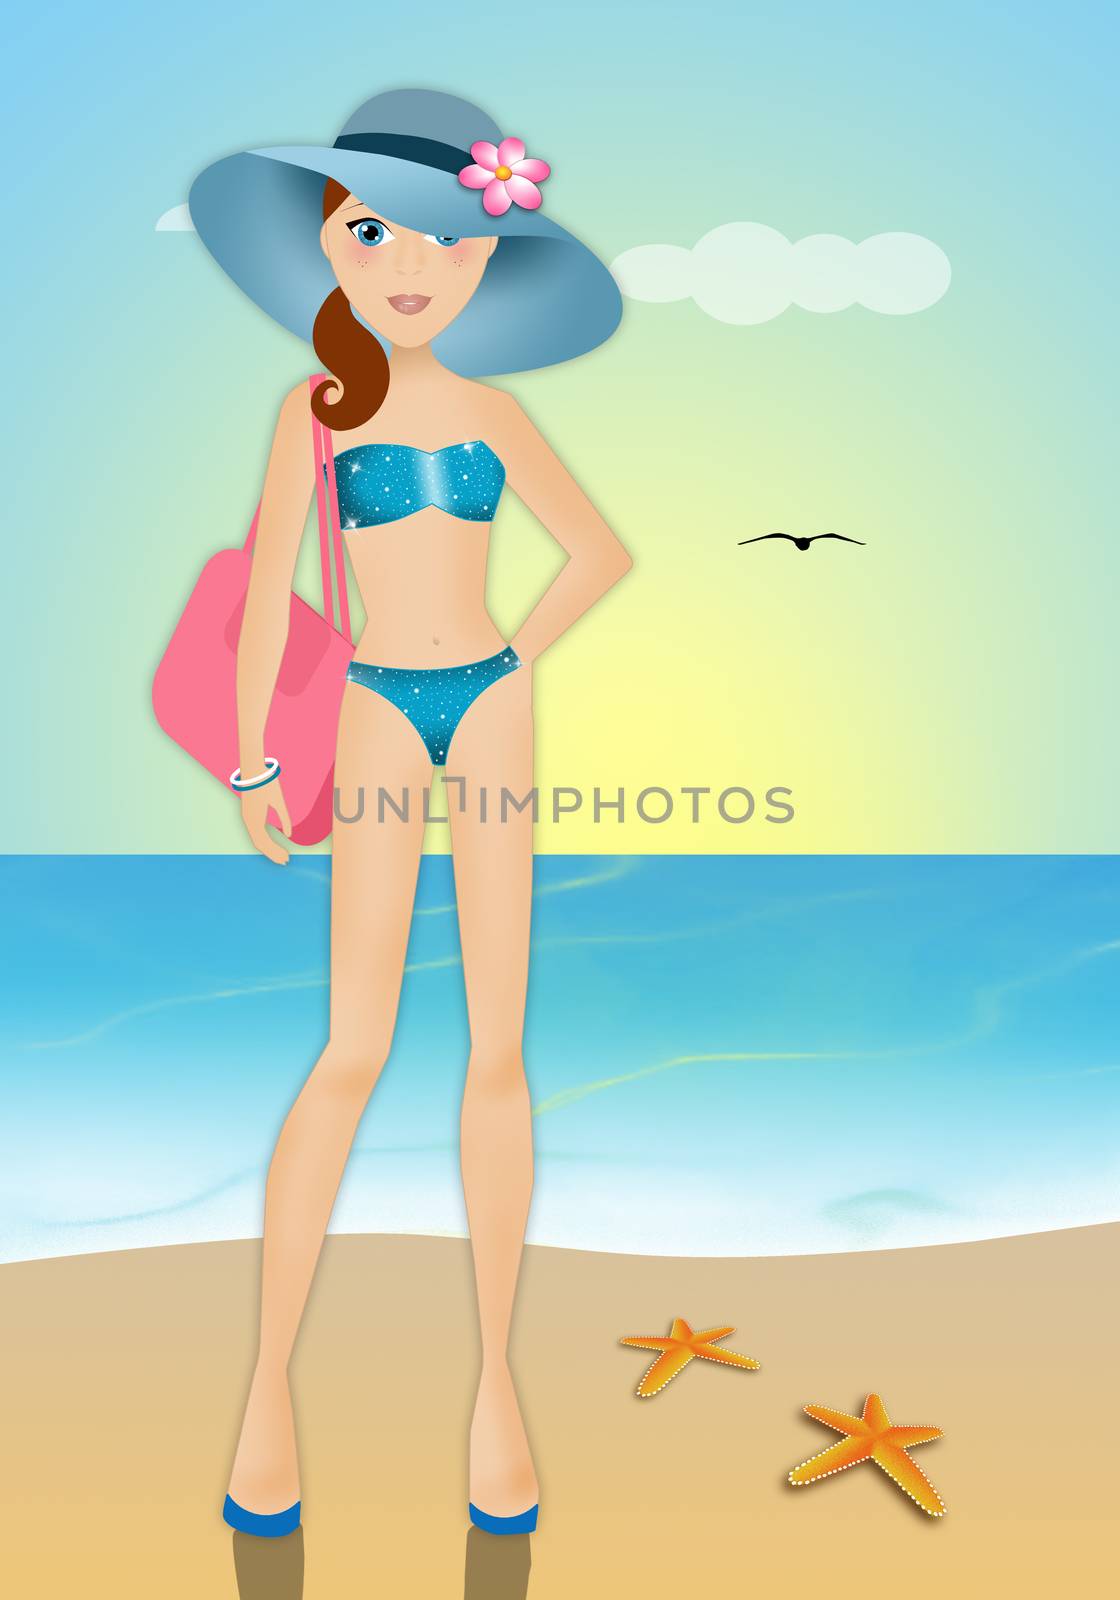 Woman in bikini on the beach